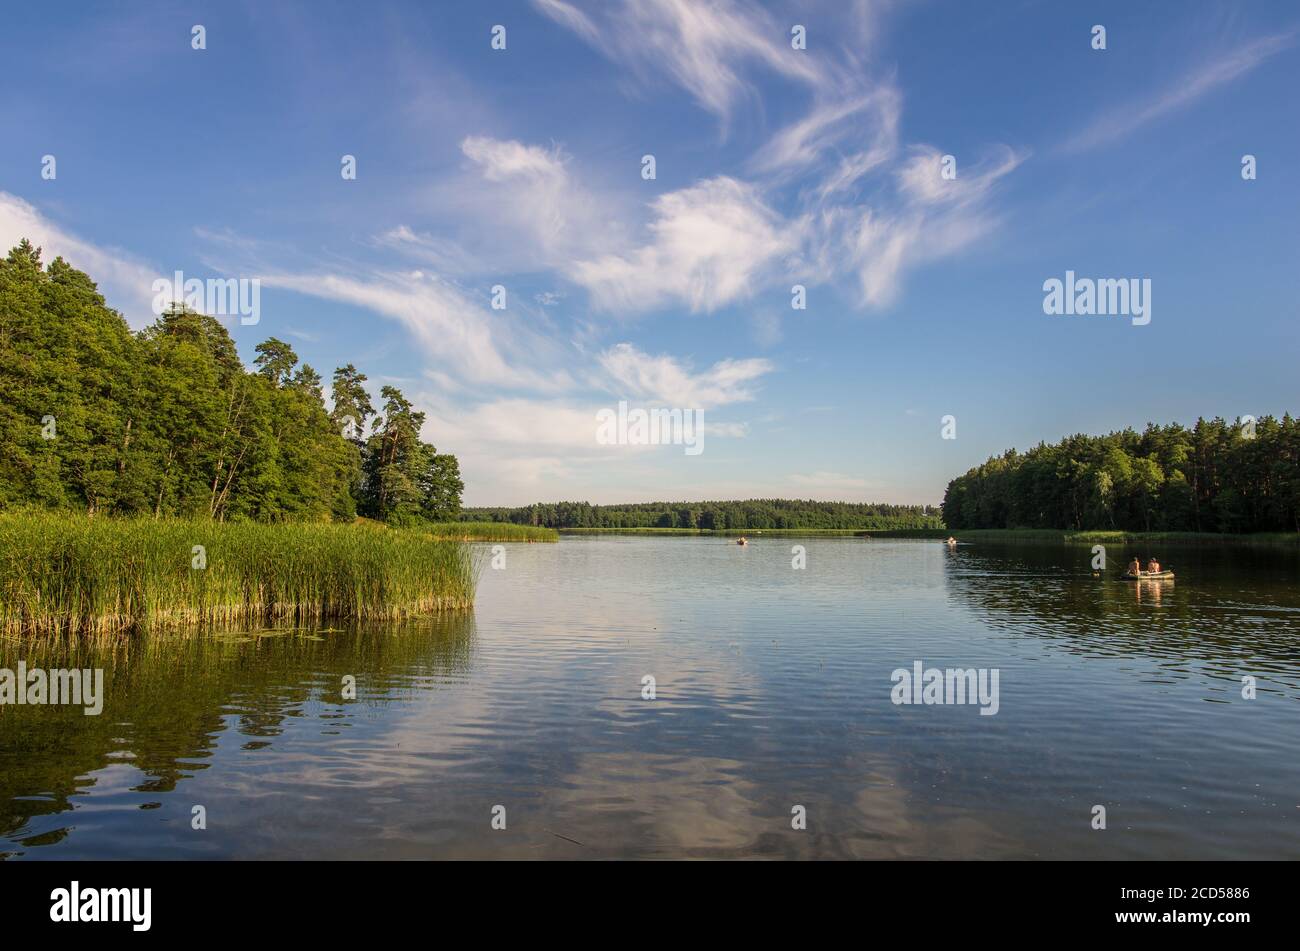 Country lake in Poland, podlasie voivodeship. Stock Photo